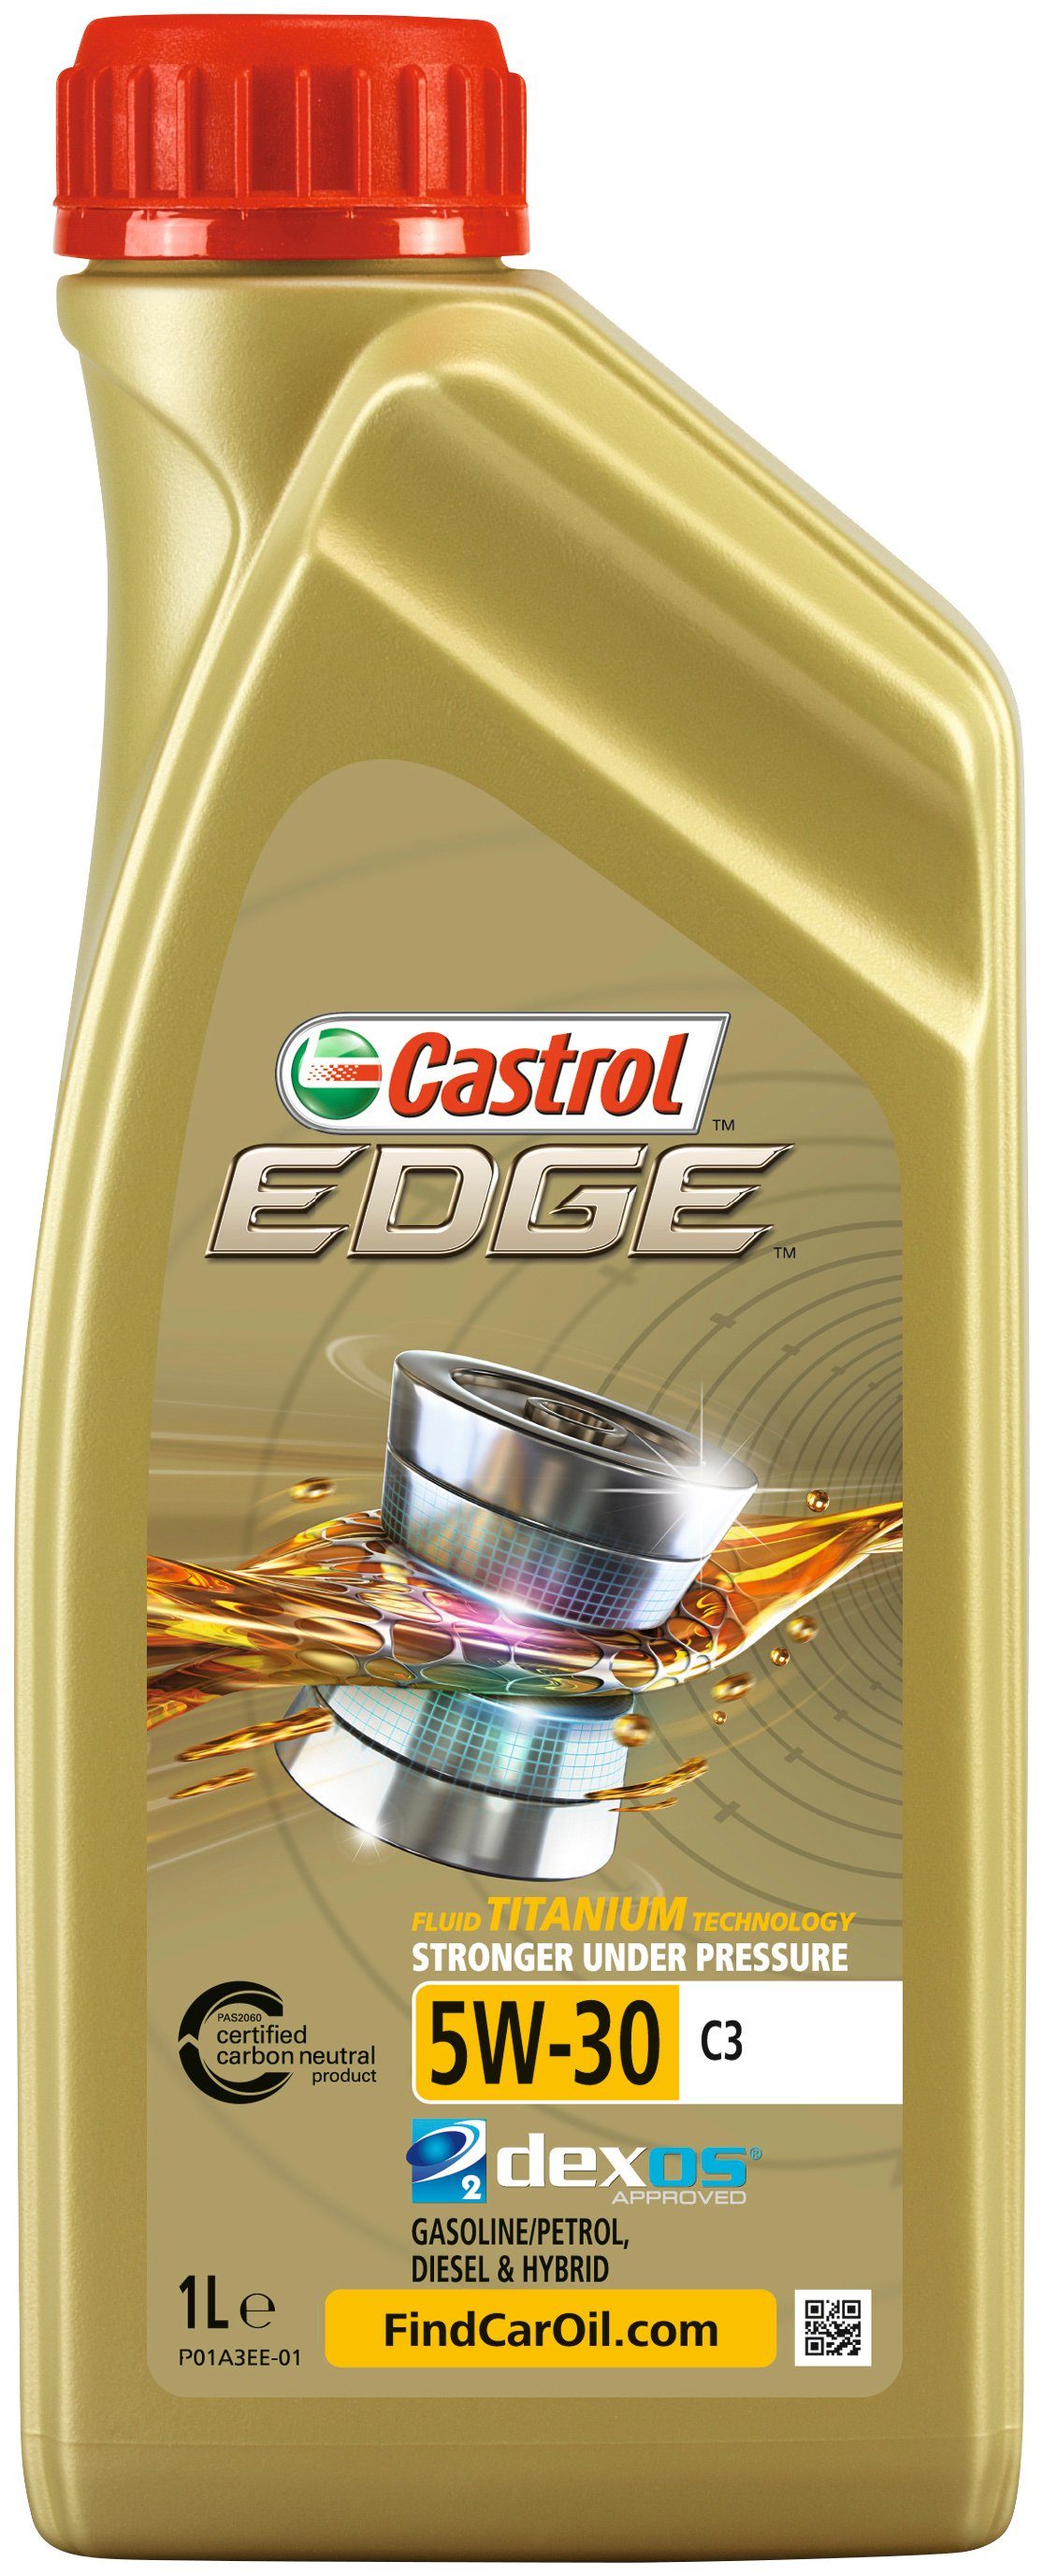 Liter, PKW Castrol Motoröl EDGE 5W-30 für C3, 1